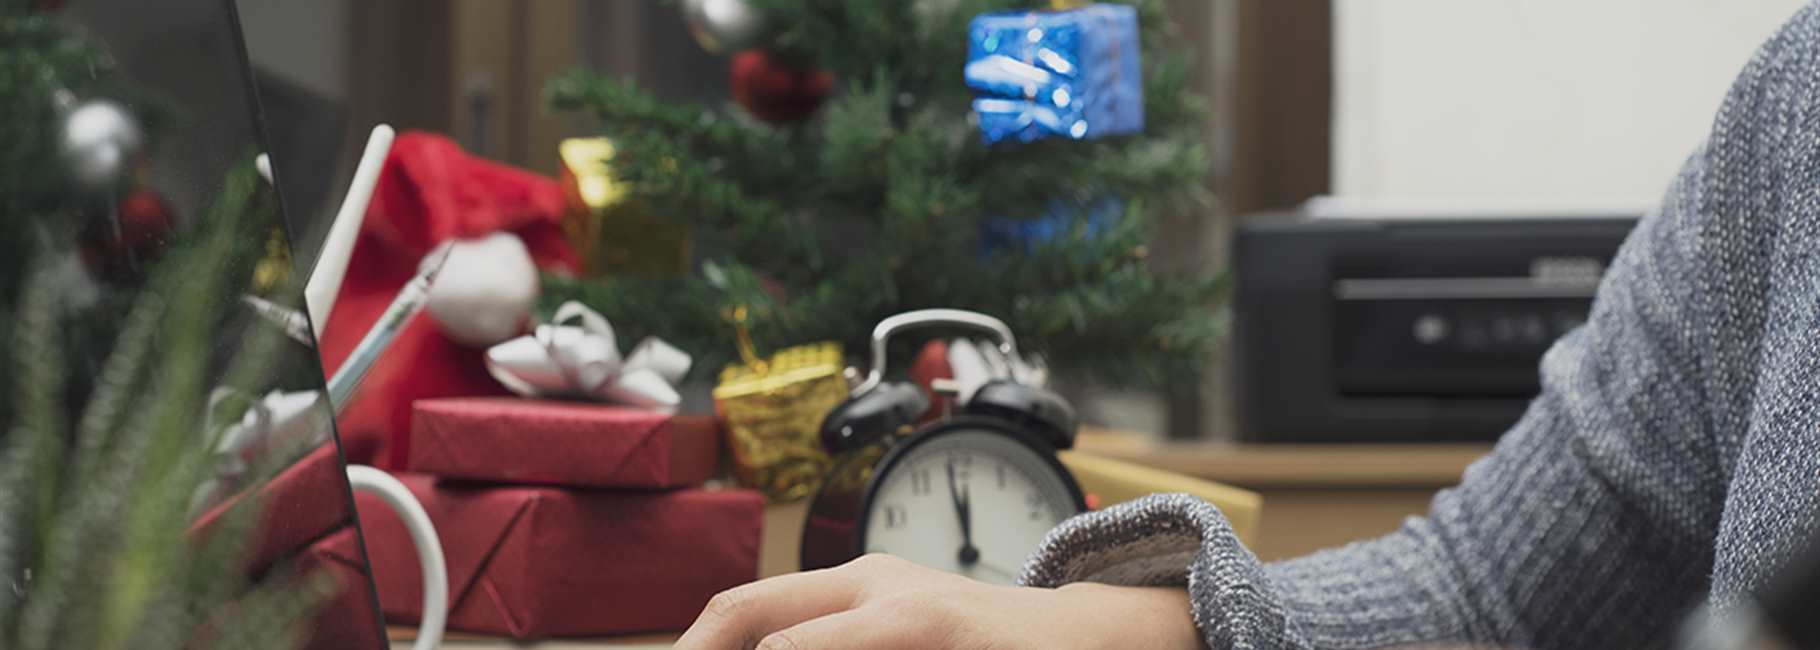 5 tips als je tijd over hebt in de kerstvakantie large